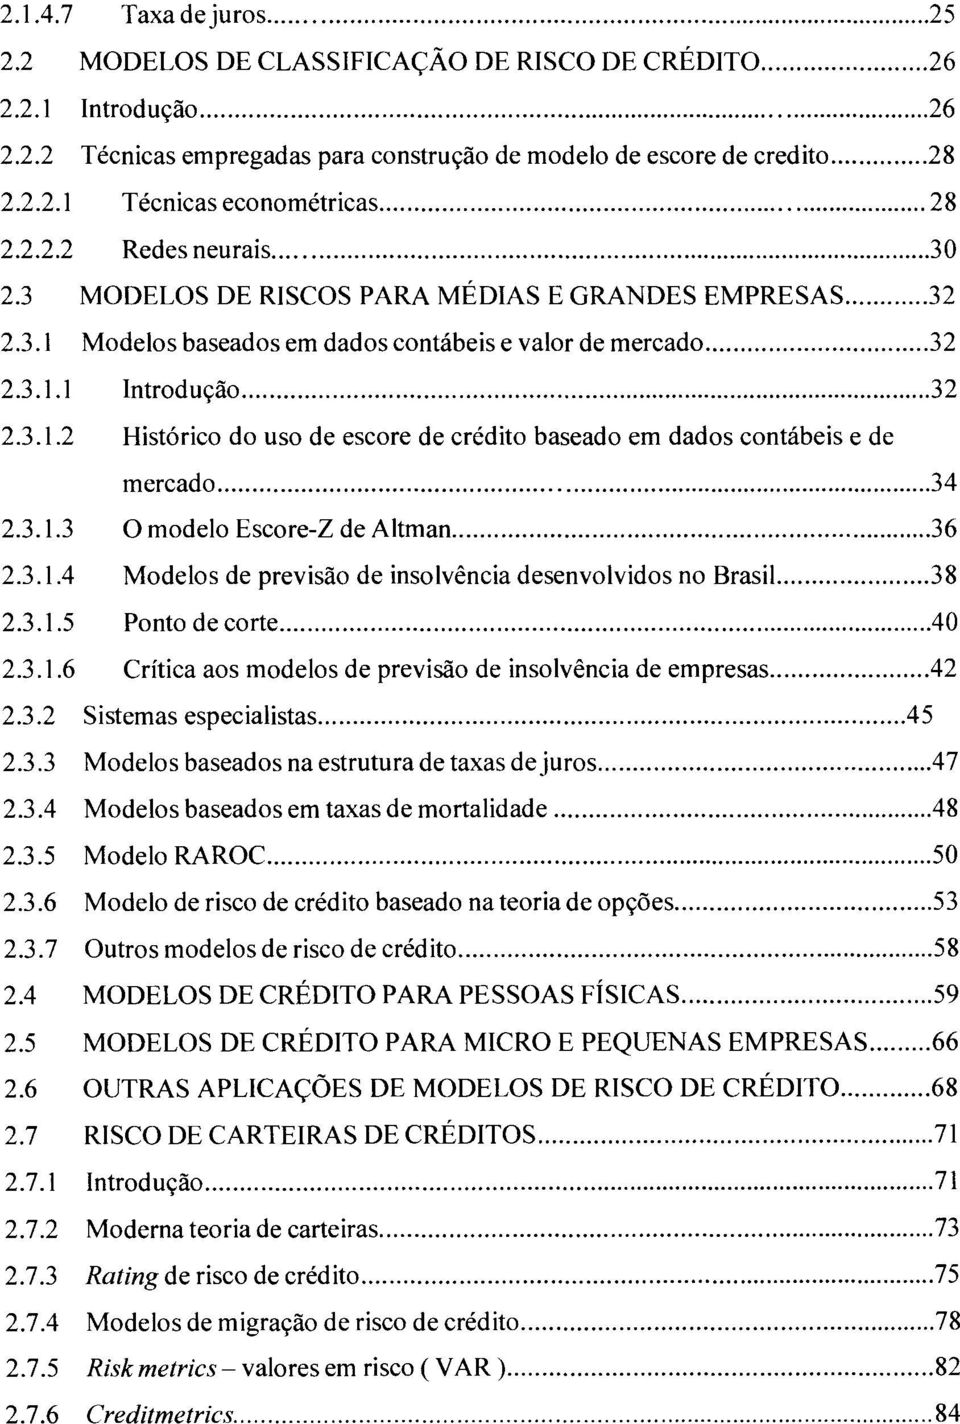 .. 34 2.3.1.3 O modelo Escore-Z de Altman... 36 2.3.1.4 Modelos de previsão de insolvência desenvolvidos no Brasil...... 38 2.3.1.5 Ponto de corte... 40 2.3.1.6 Crítica aos modelos de previsão de insolvência de empresas.